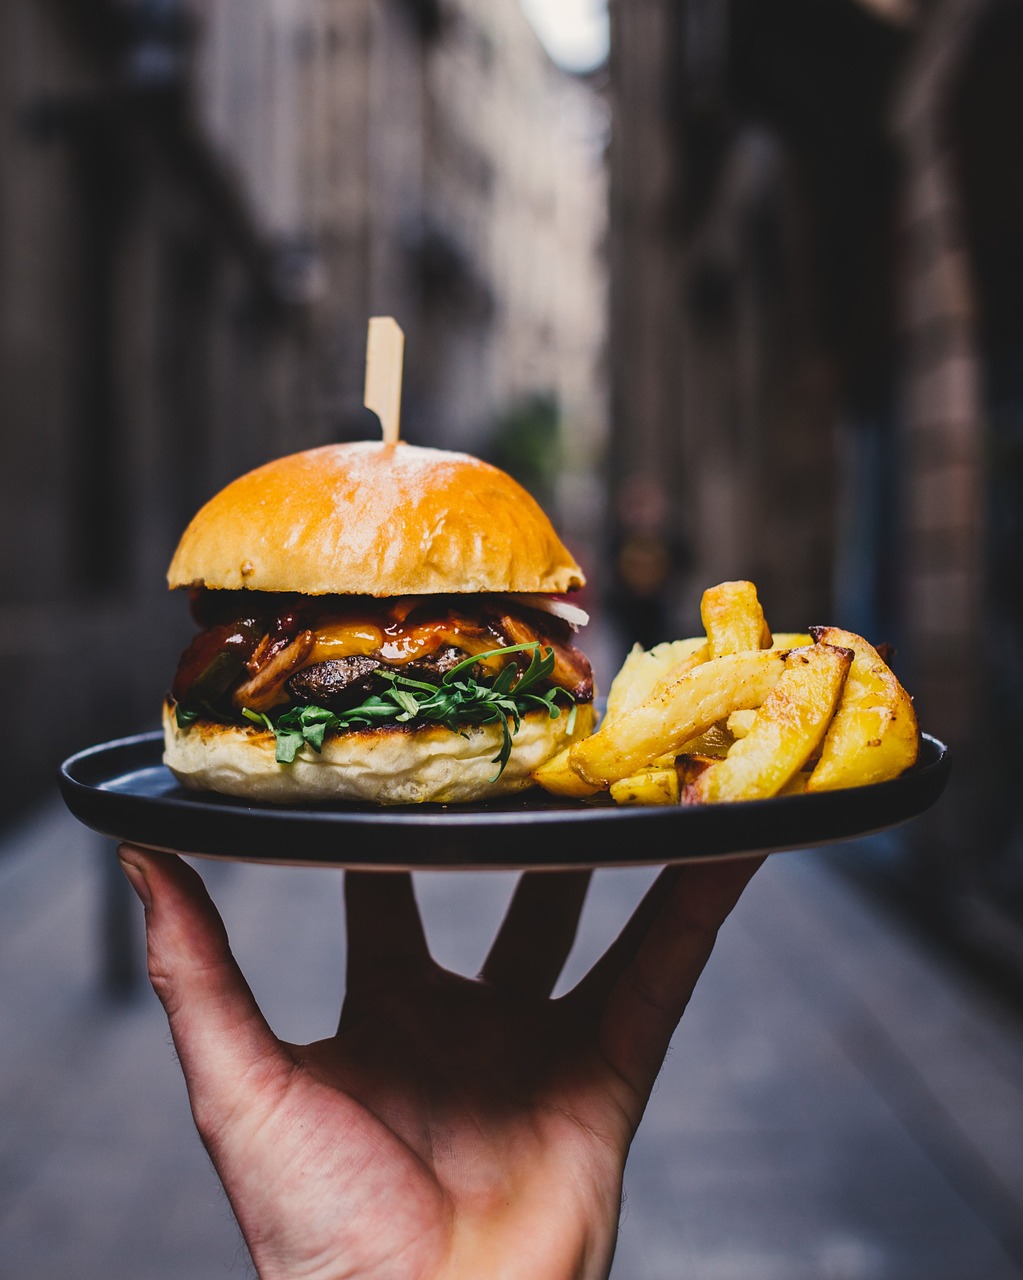 Ein Kellner serviert einen Teller mit einem Burger und Pommes Frites | Quelle: Pixabay